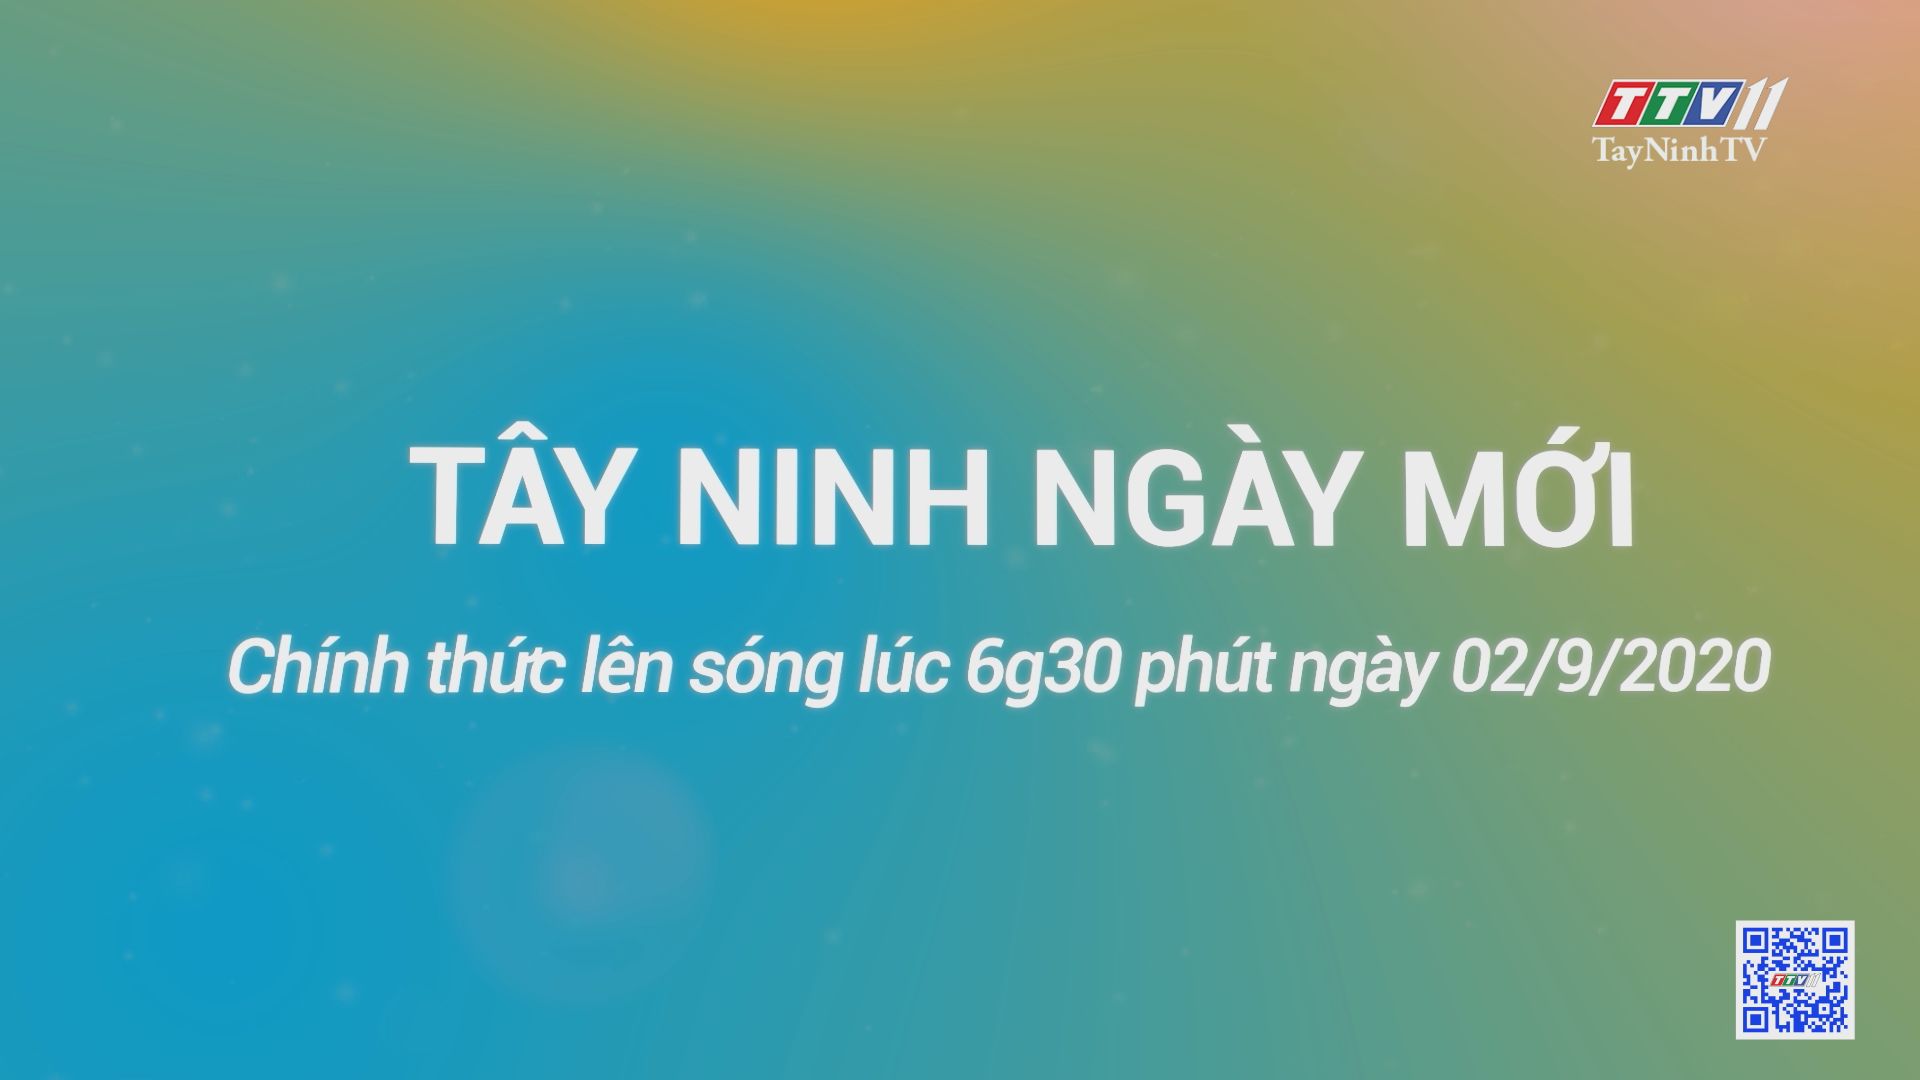 Tây Ninh ngày mới-Trailer | TayNinhTV 